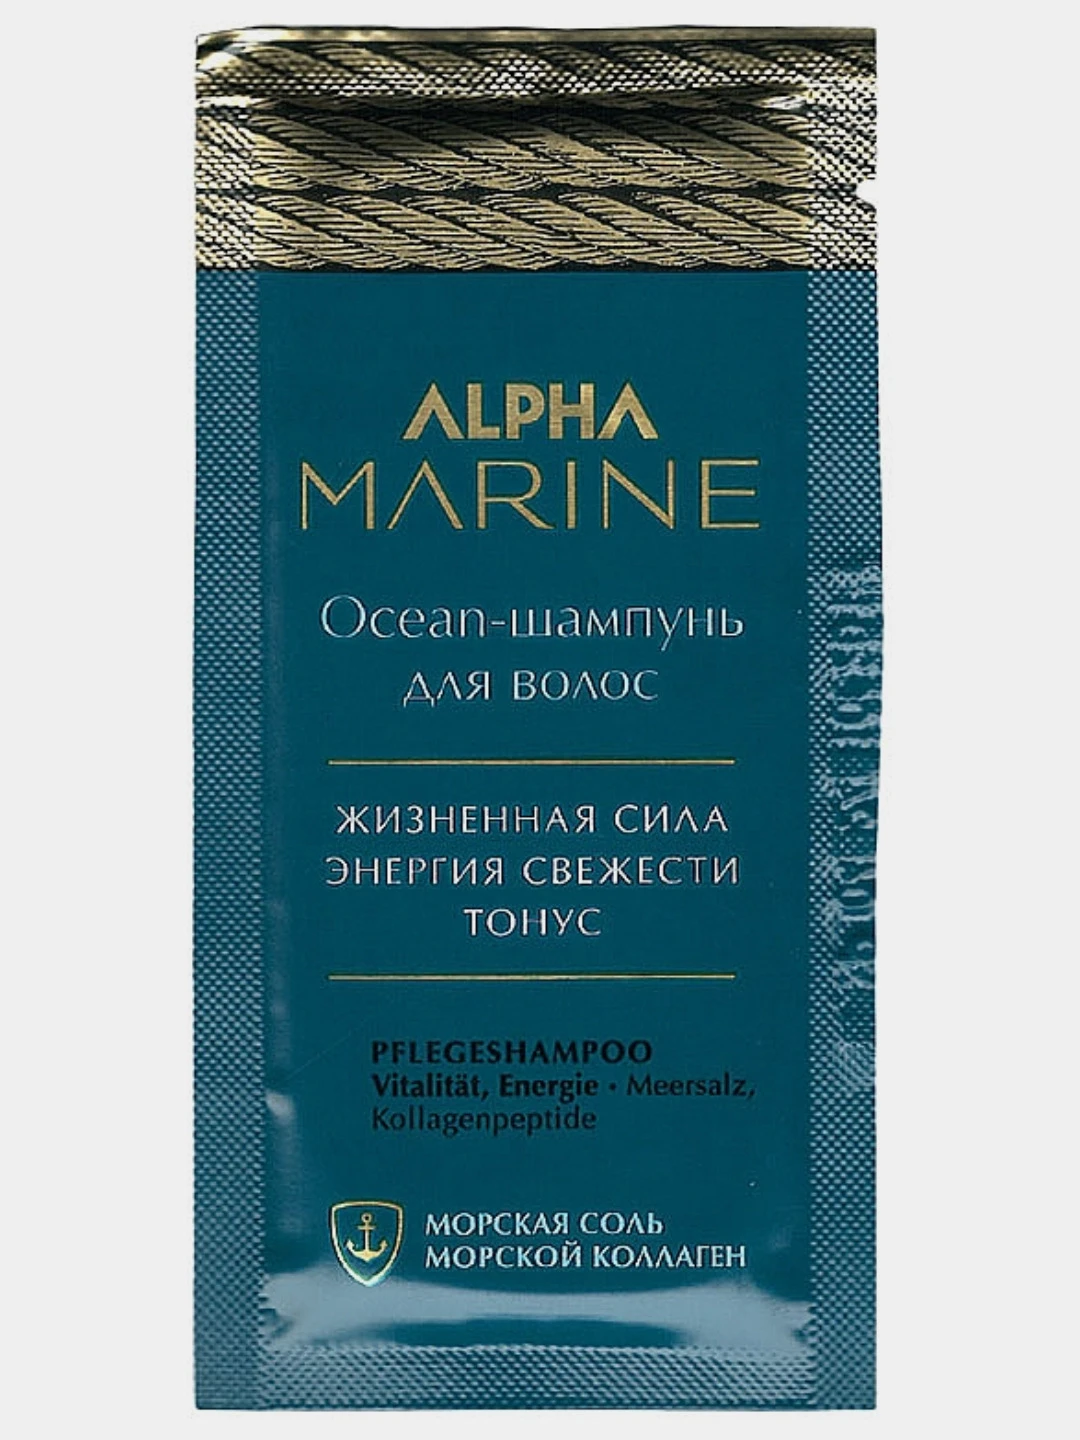 Шампунь alpha marine. Alpha Marine шампунь. Шампунь от Эстель Ocean. Am/os30 Ocean-шампунь для волос Alpha Marine, 30 мл. Набор пробников Estel Alpha Marine.